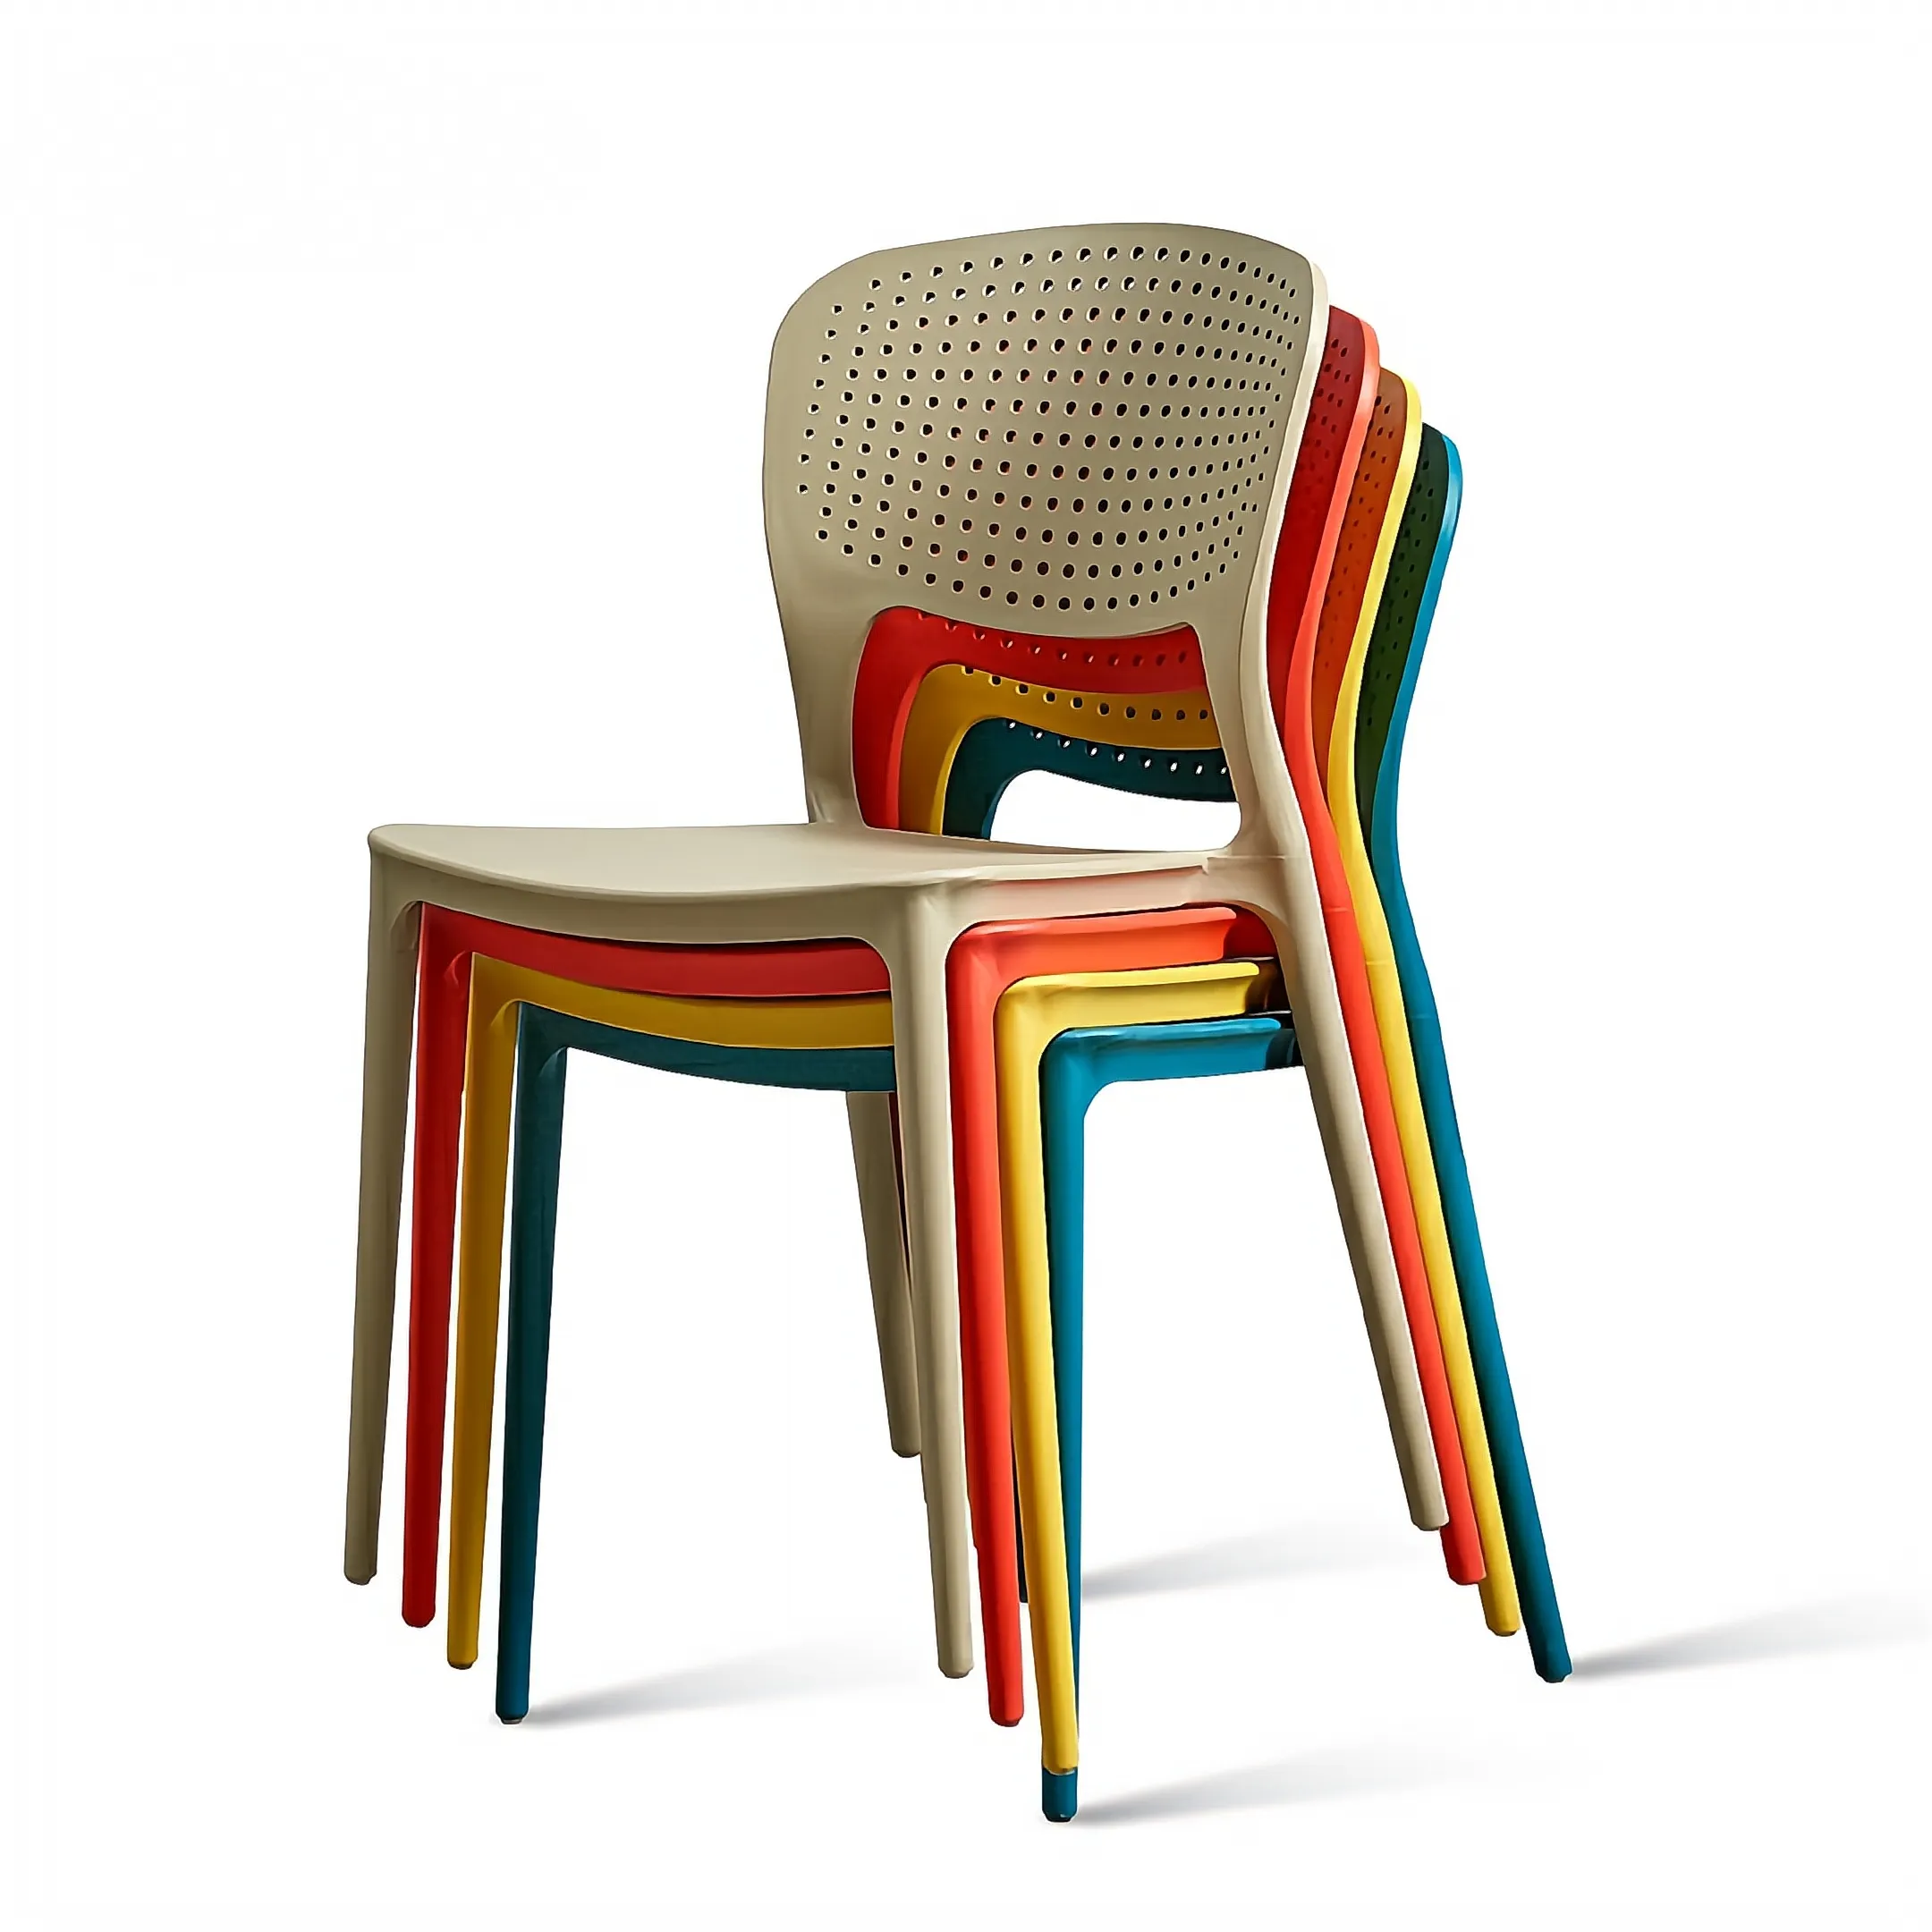 Silla de comedor para el hogar de diseño nórdico, silla de plástico, taburete trasero económico Simple moderno, silla de café barata